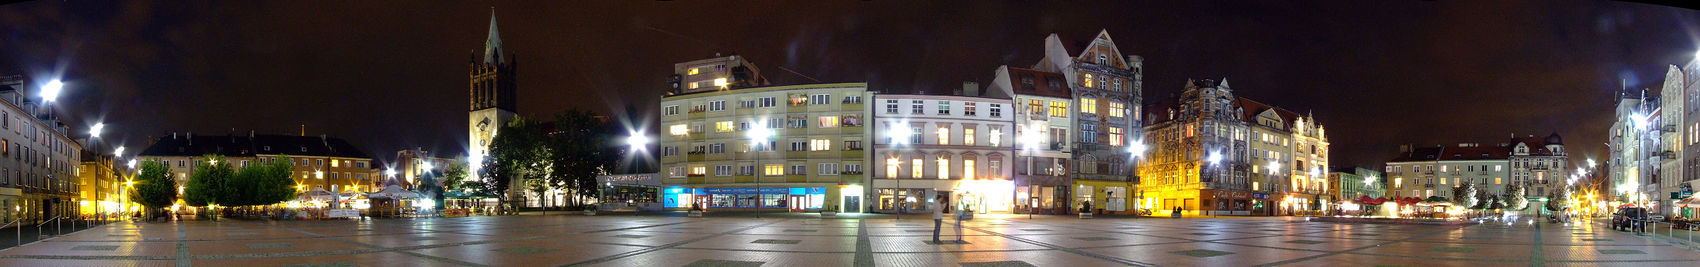 Panorama náměstí v Bytomi